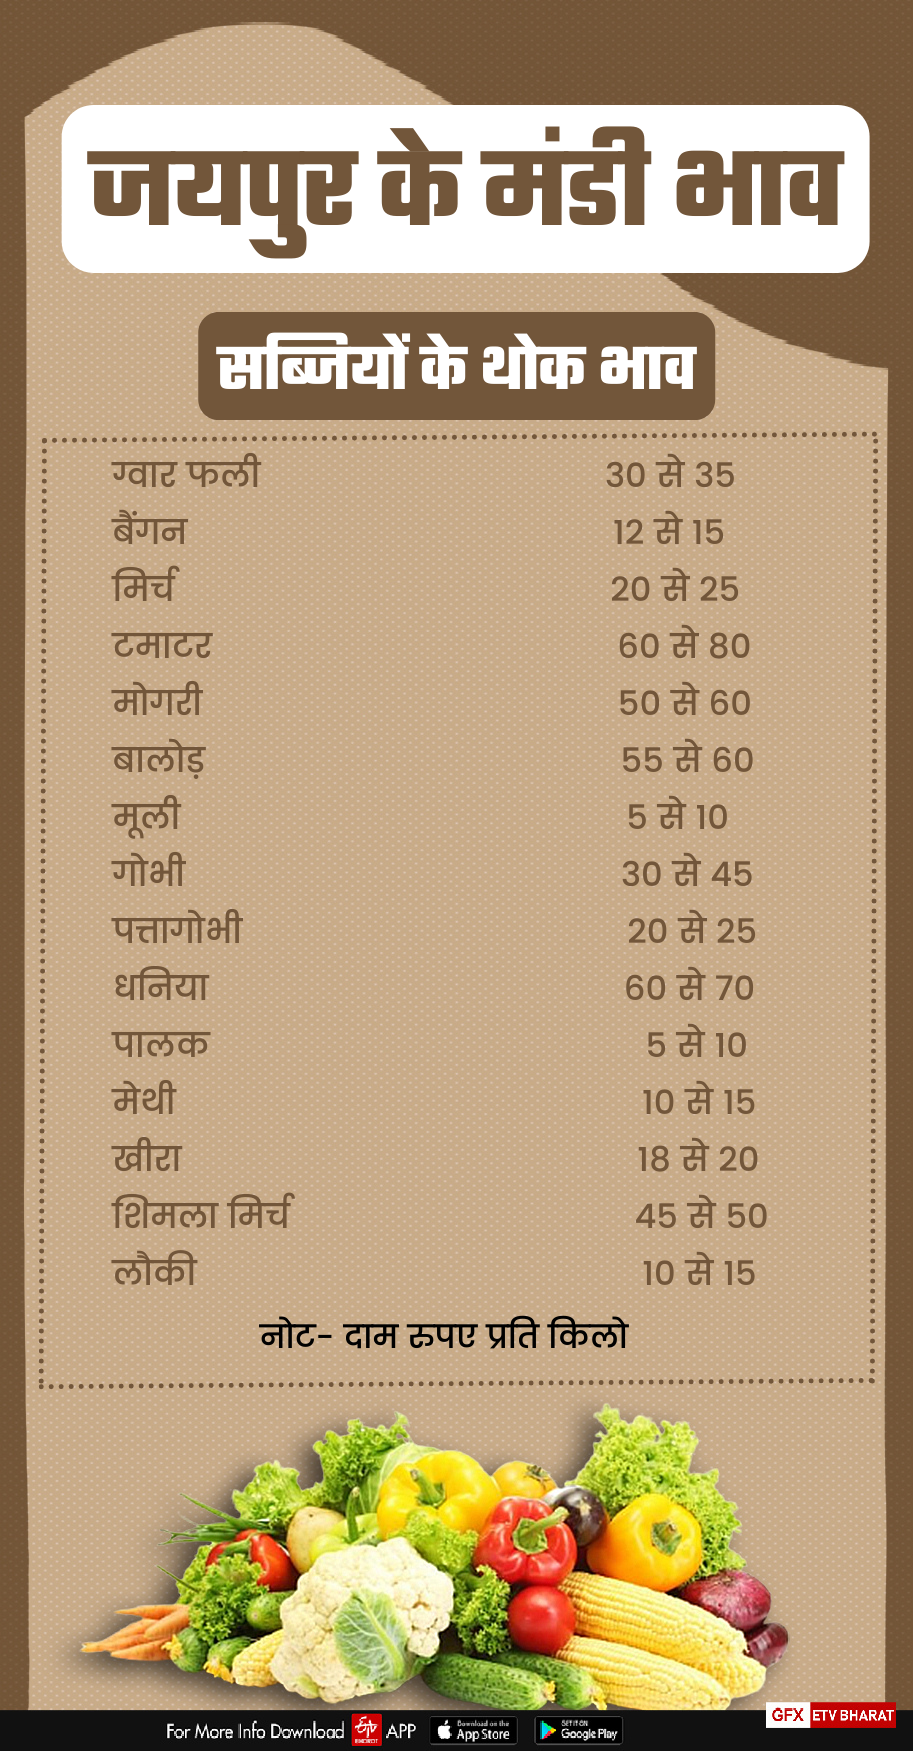 Jaipur Mandi Rate, Mandi of Jaipur